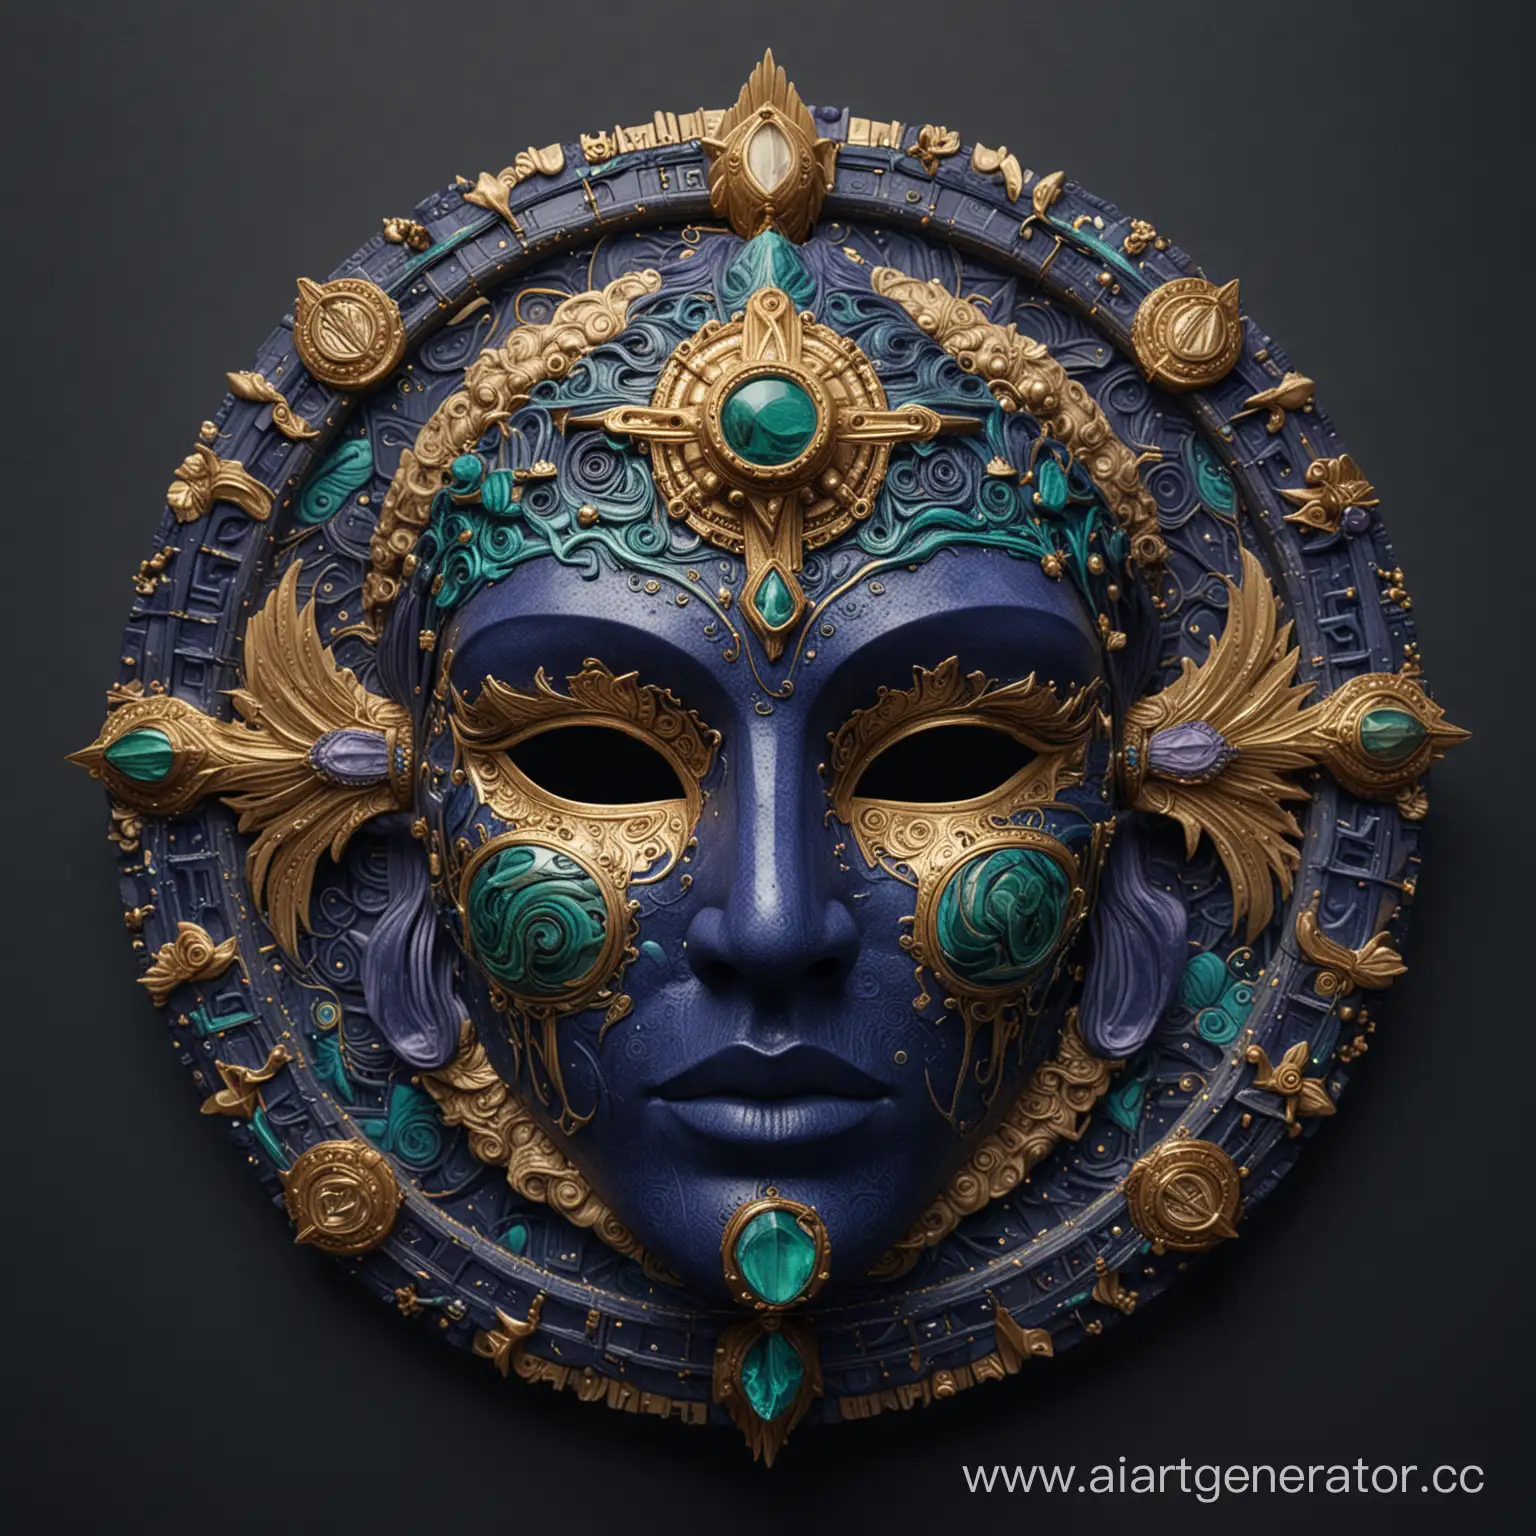 Интерьерная маска знака зодиака Водолей, символичная, сложно выполненная со множеством деталей и фактур. Выполнена в темно- синем, пурпурном, малахитовом, бежевом, золотом цветах